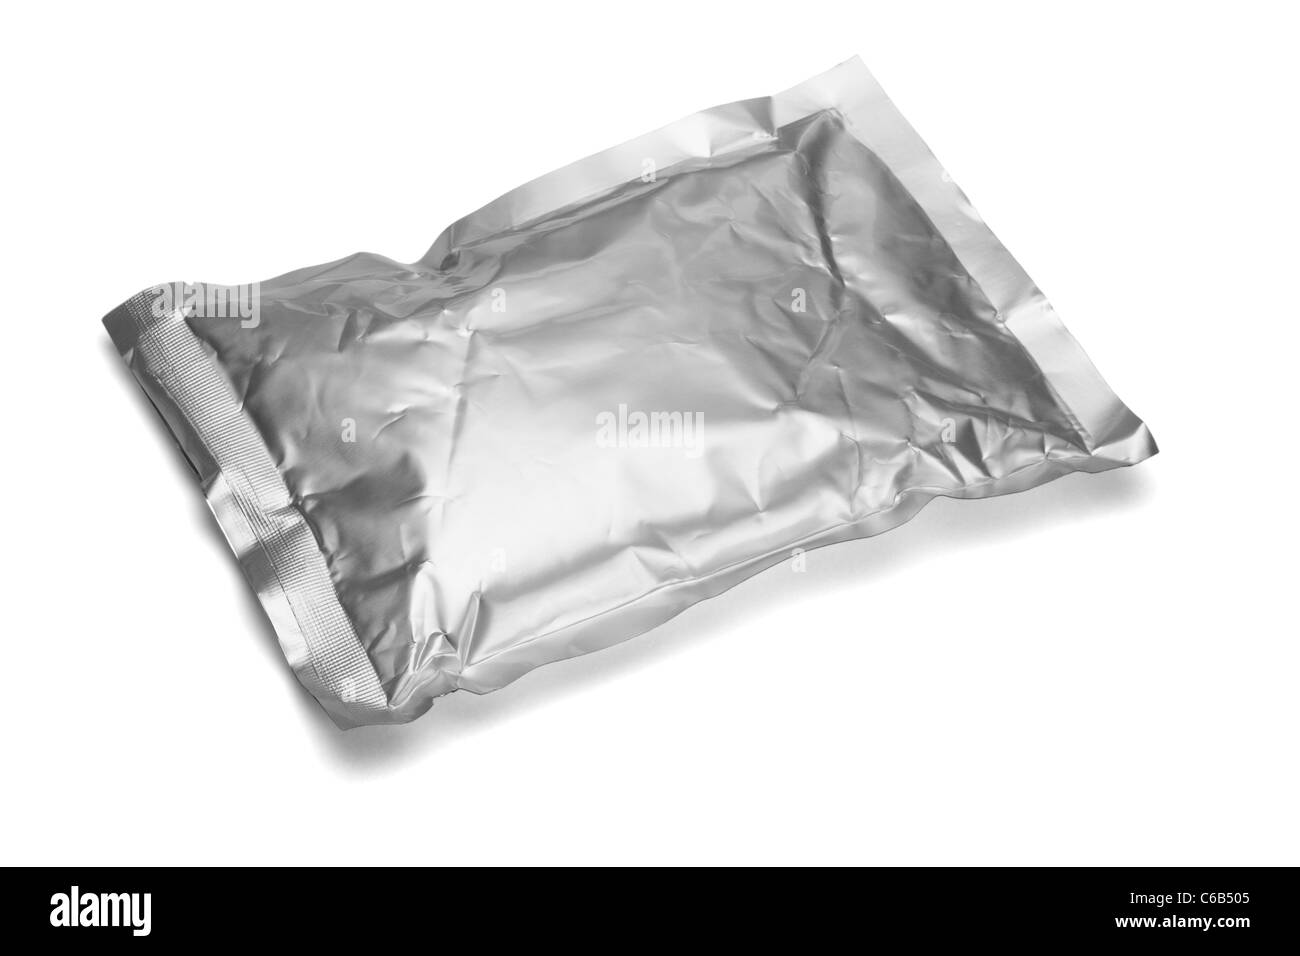 Sealed aluminum bag lying on white background Stock Photo